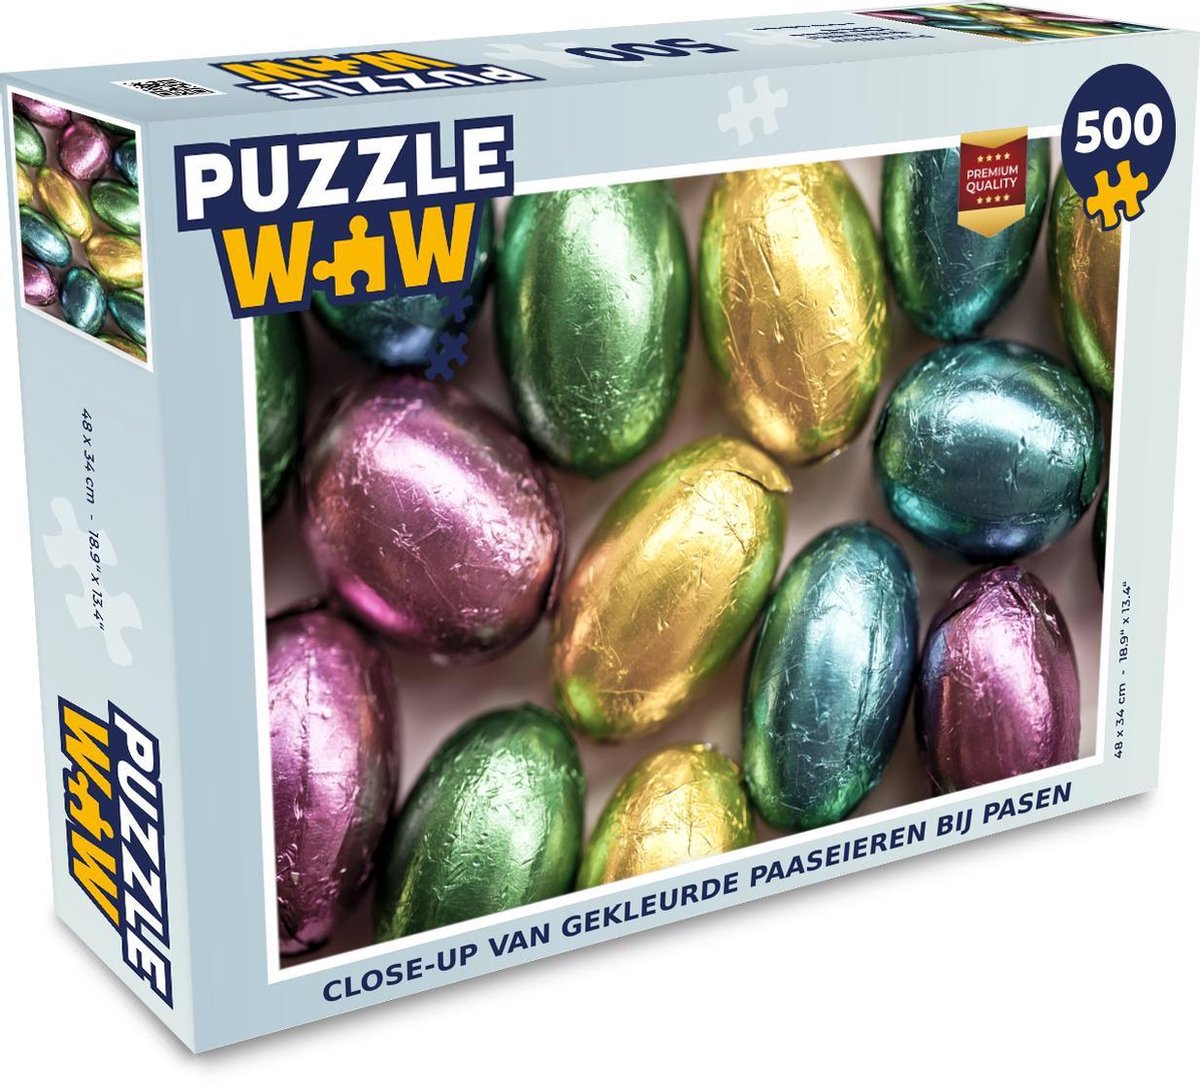 Puzzel 500 stukjes Pasen - Close-up van gekleurde paaseieren bij Pasen -  PuzzleWow... | bol.com